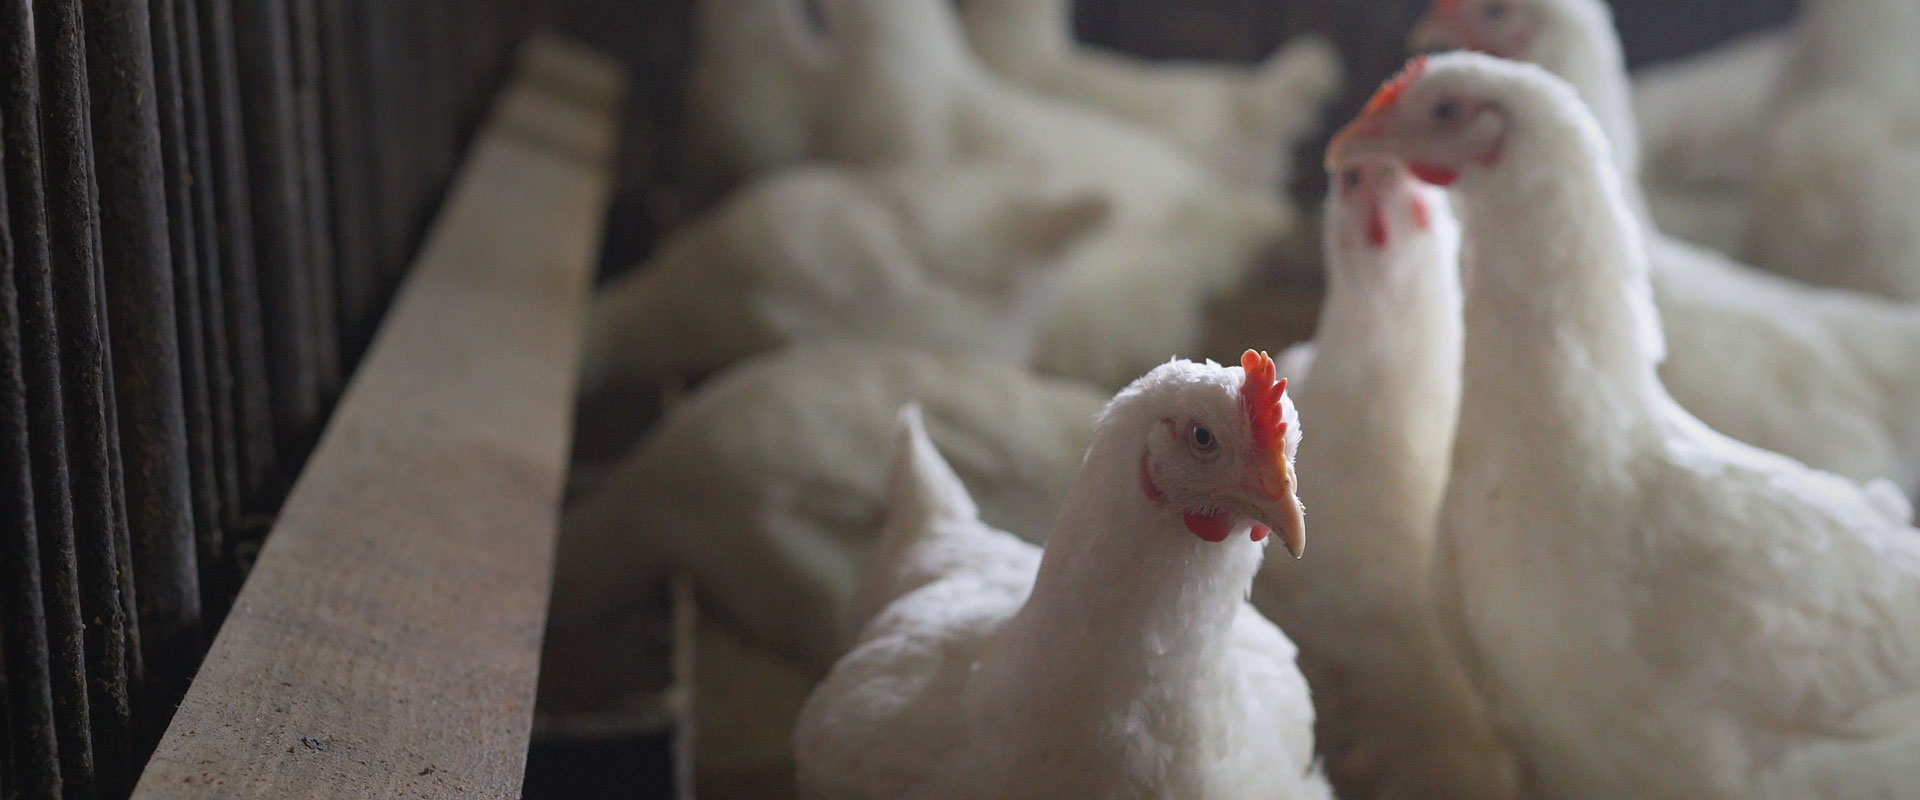 集服务家禽养殖、预防治疗为一体的新型兽药生产制造企业